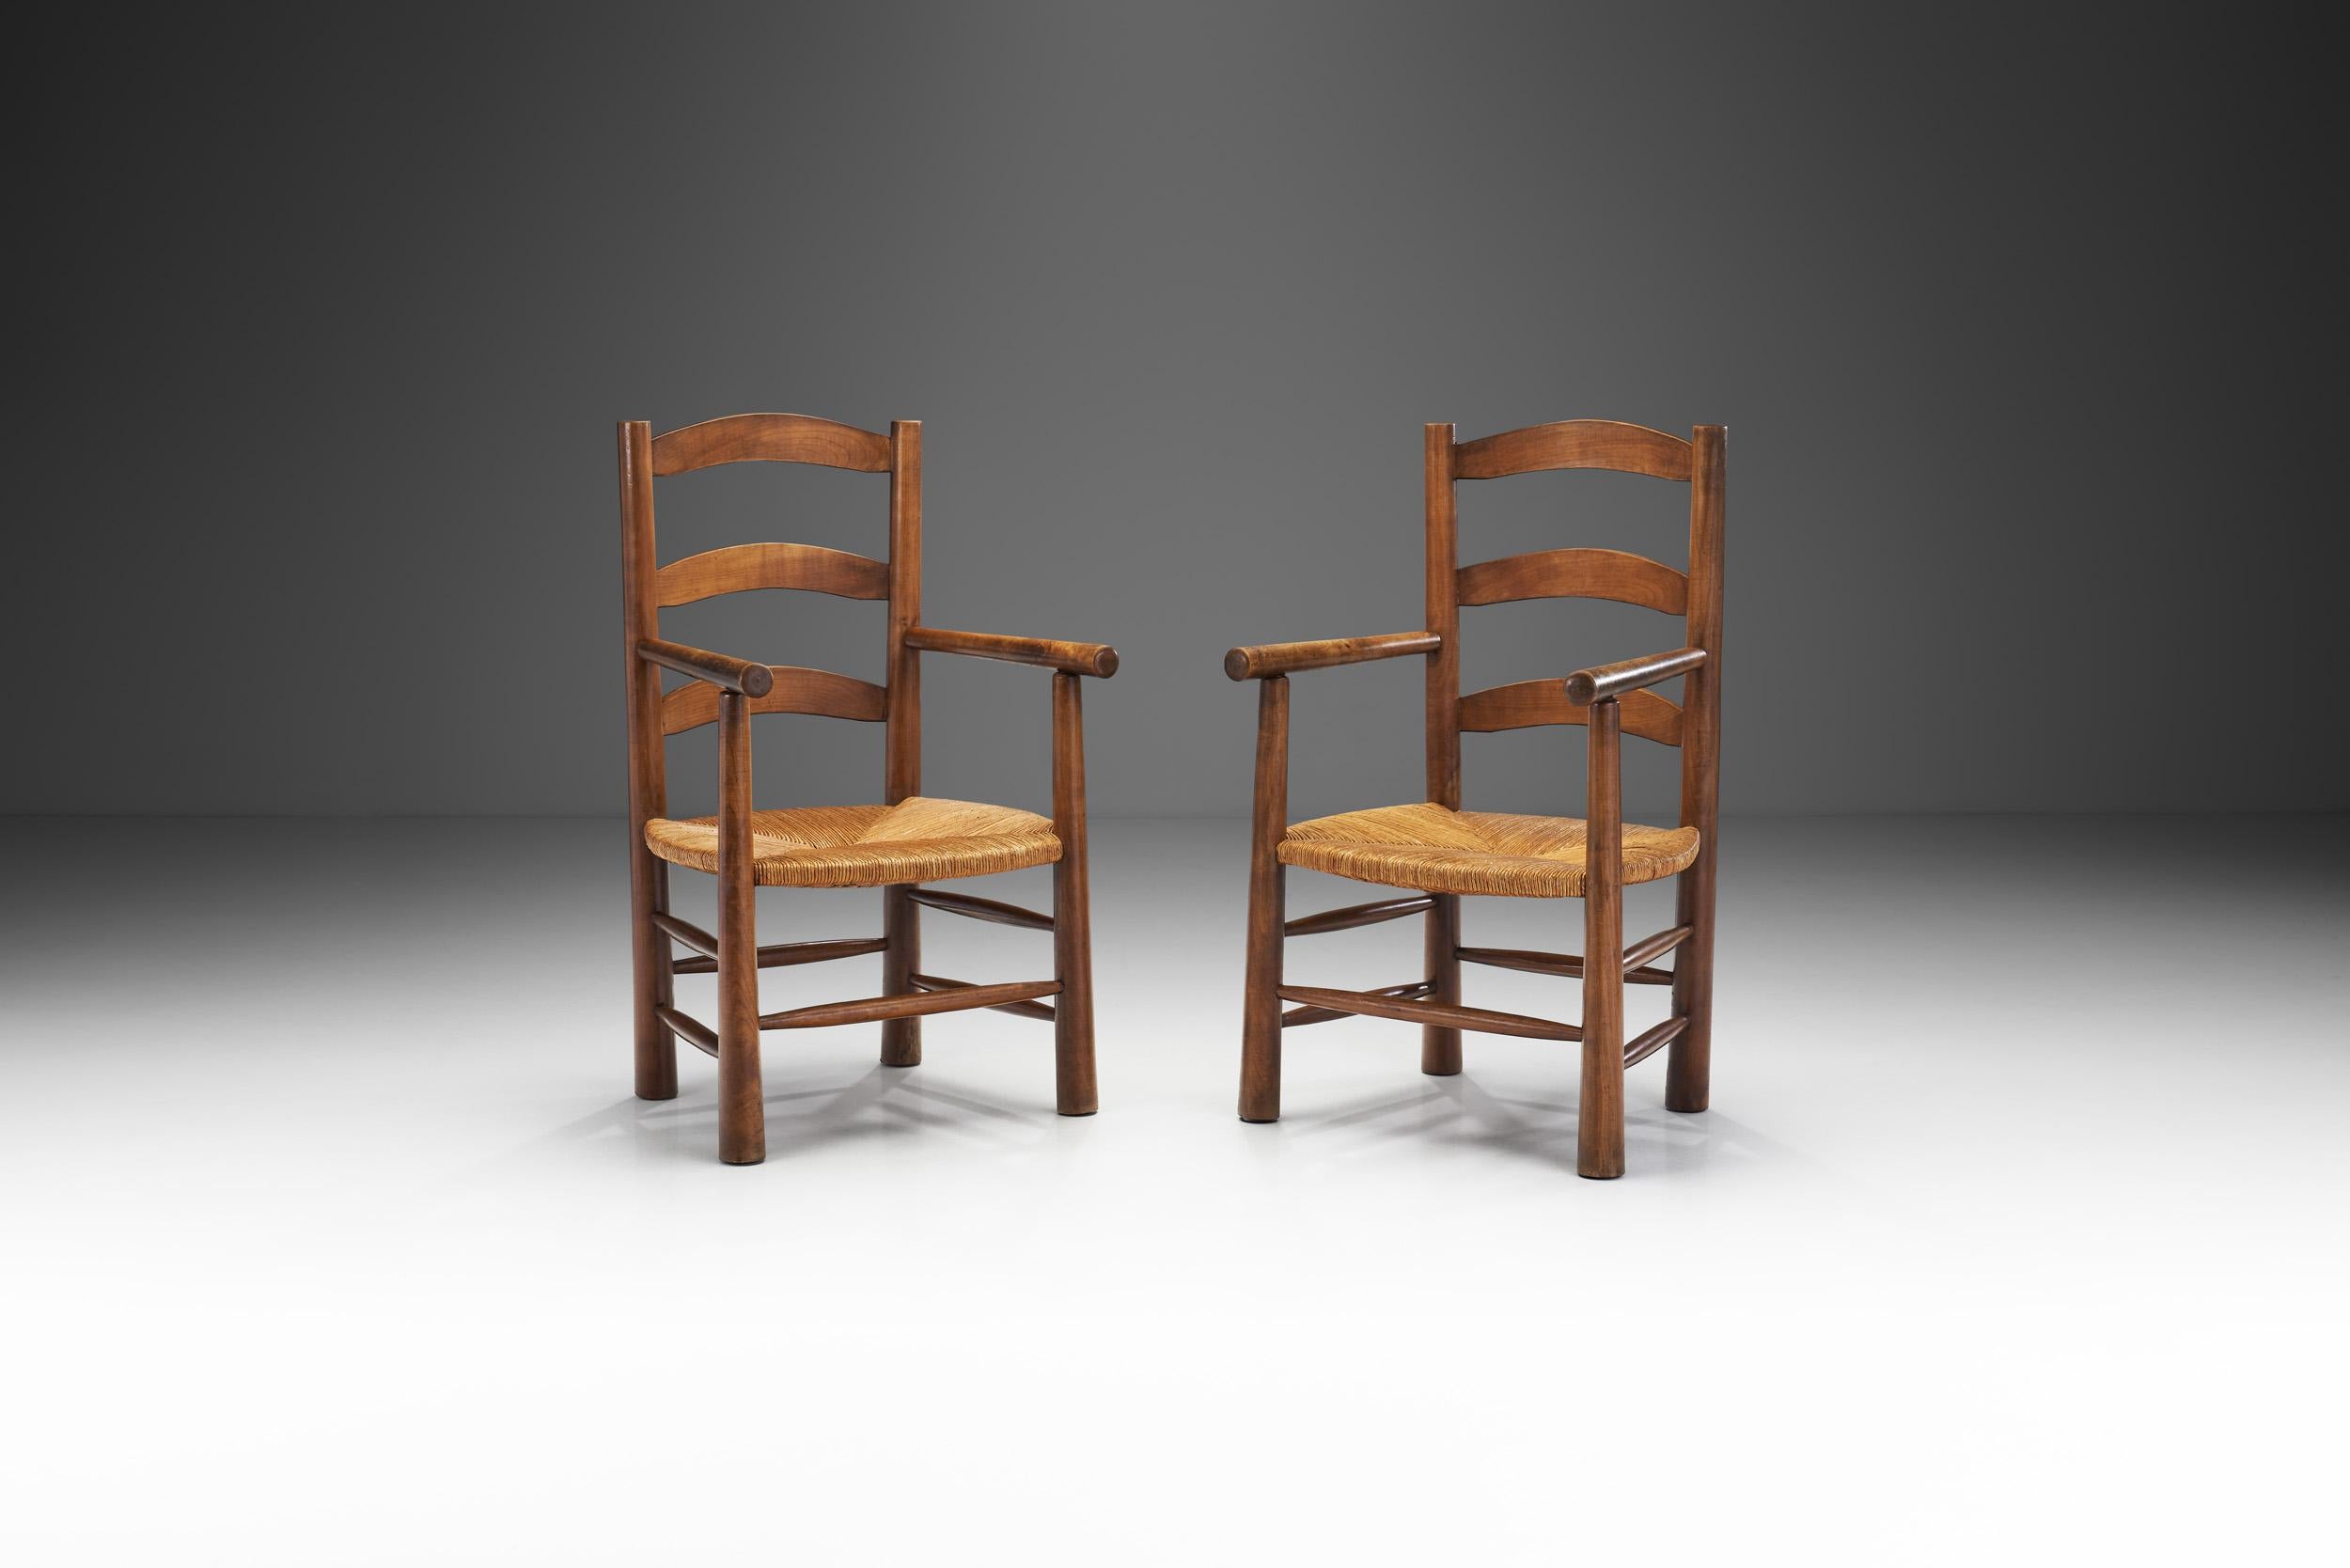 Cette paire de fauteuils rustiques a été réalisée dans les années 1950 en France, en s'inspirant des créations en bois et en paille de Charlotte Perriand. L'association de la structure en chêne et du siège en jonc tressé est un mélange organique et